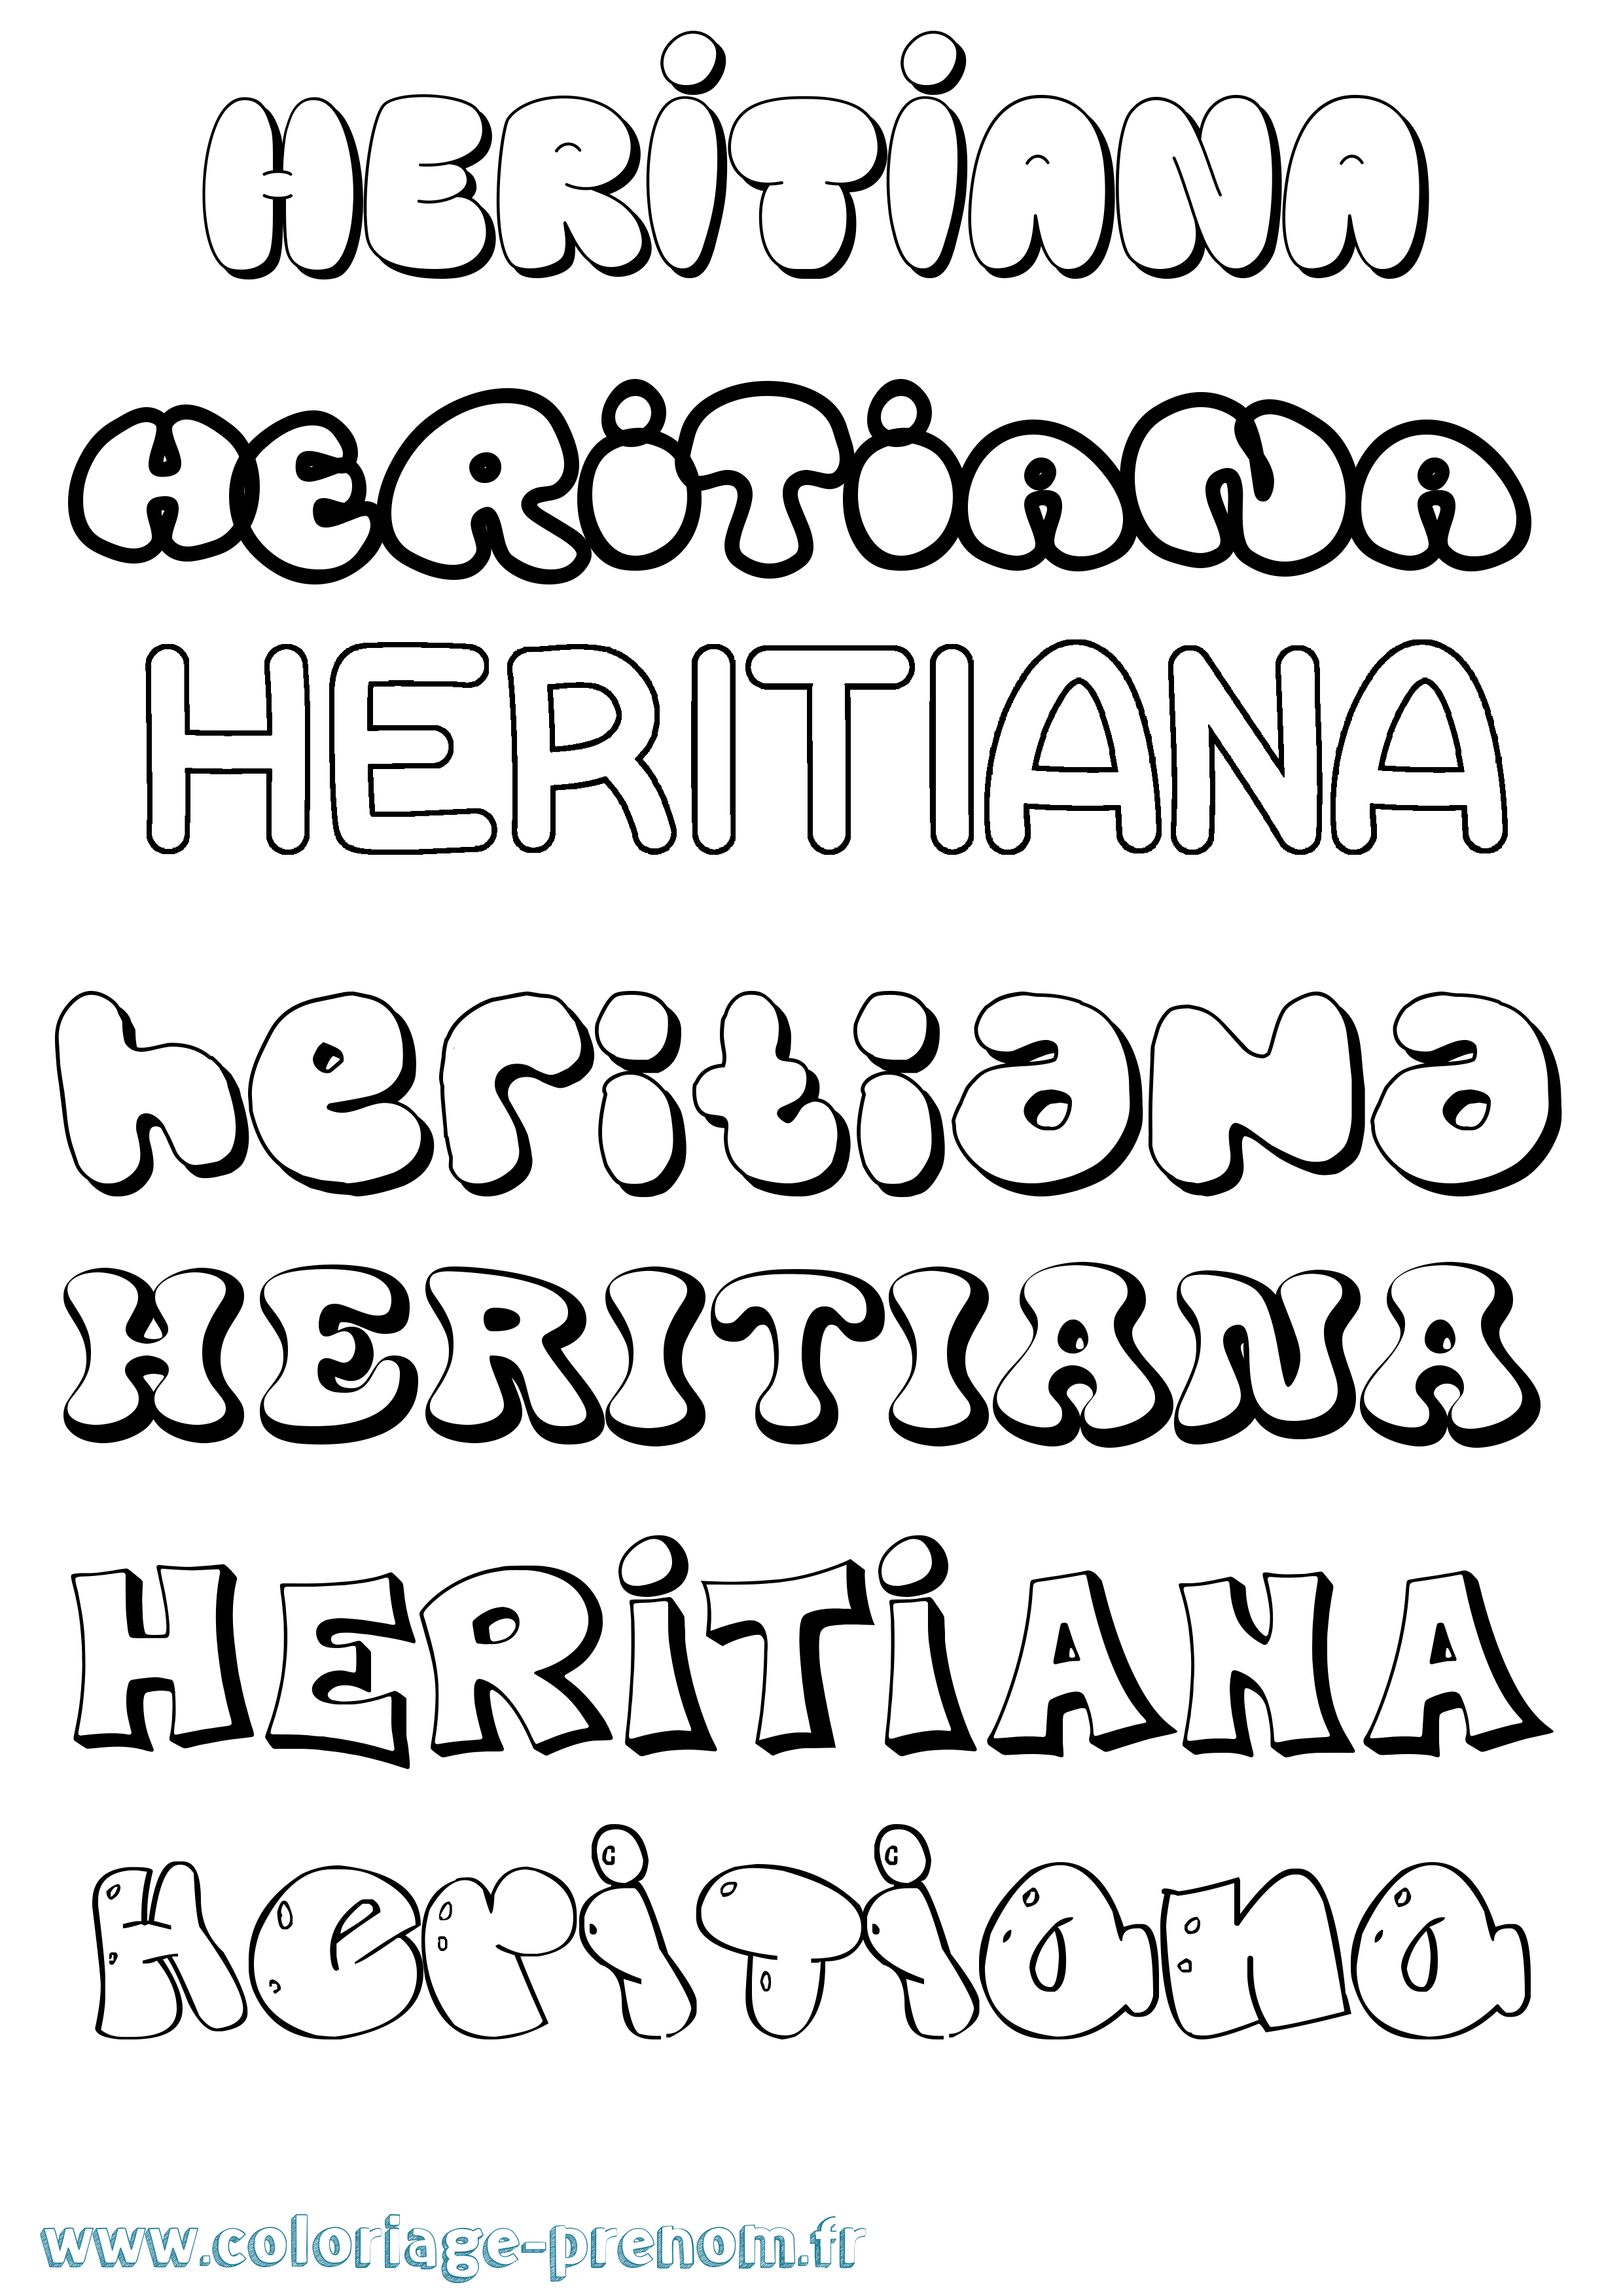 Coloriage prénom Heritiana Bubble